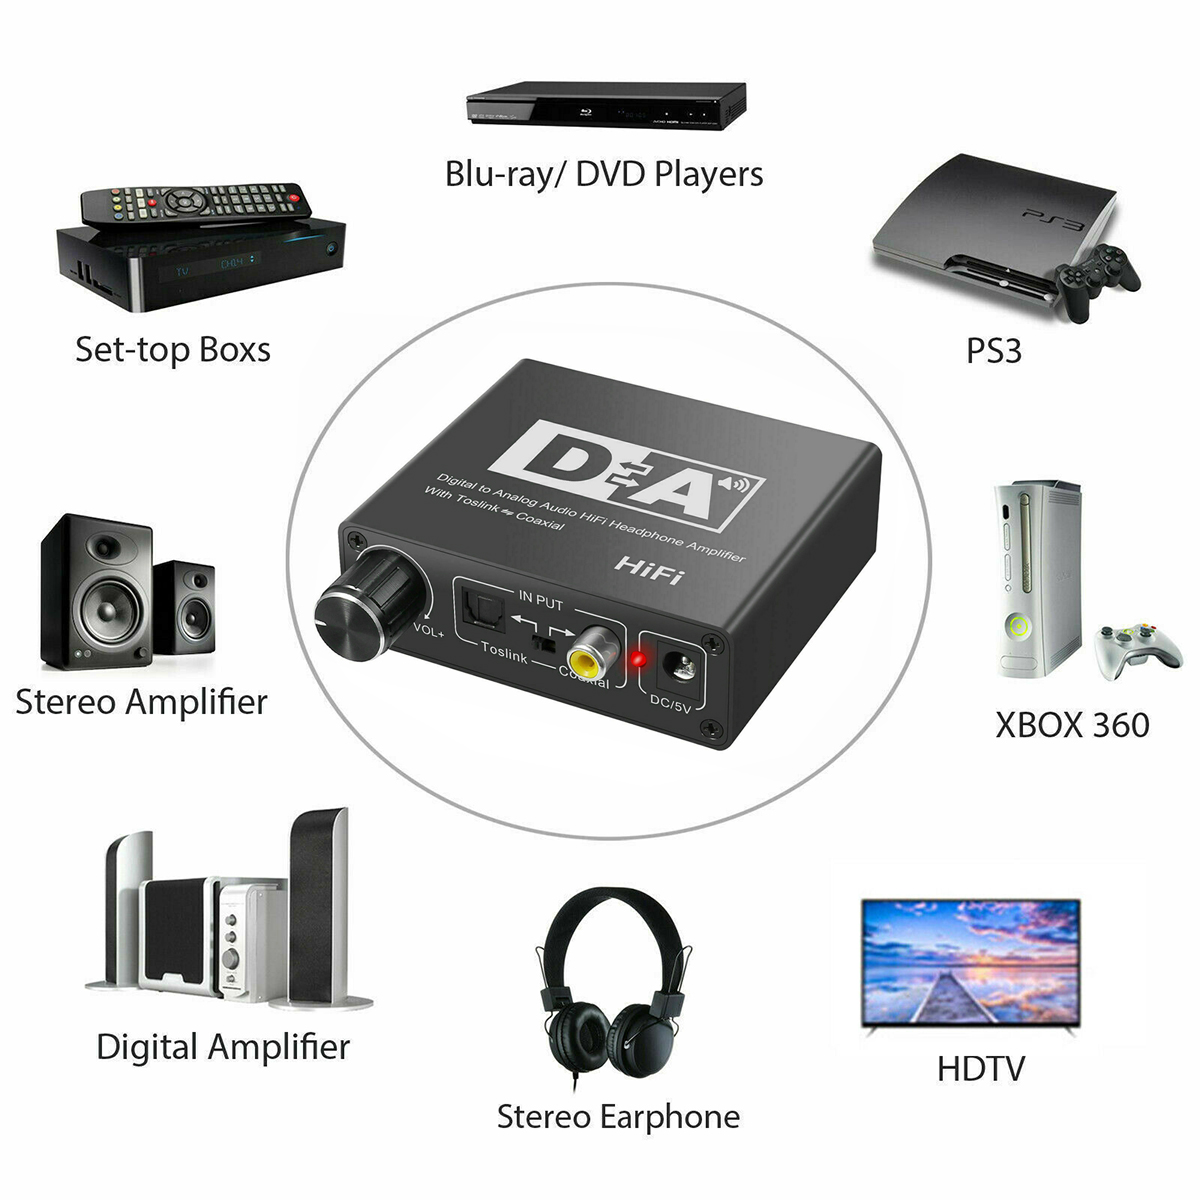 DAC Audio 192KHz, Convertisseur Audio Numérique vers Analogique DAC en  Aluminium, vers Jack Stéréo L / R RCA 3,5 mm avec Câble Optique / Coaxial  pour HD TV Blu-Ray PS3 PS4 Xbox 